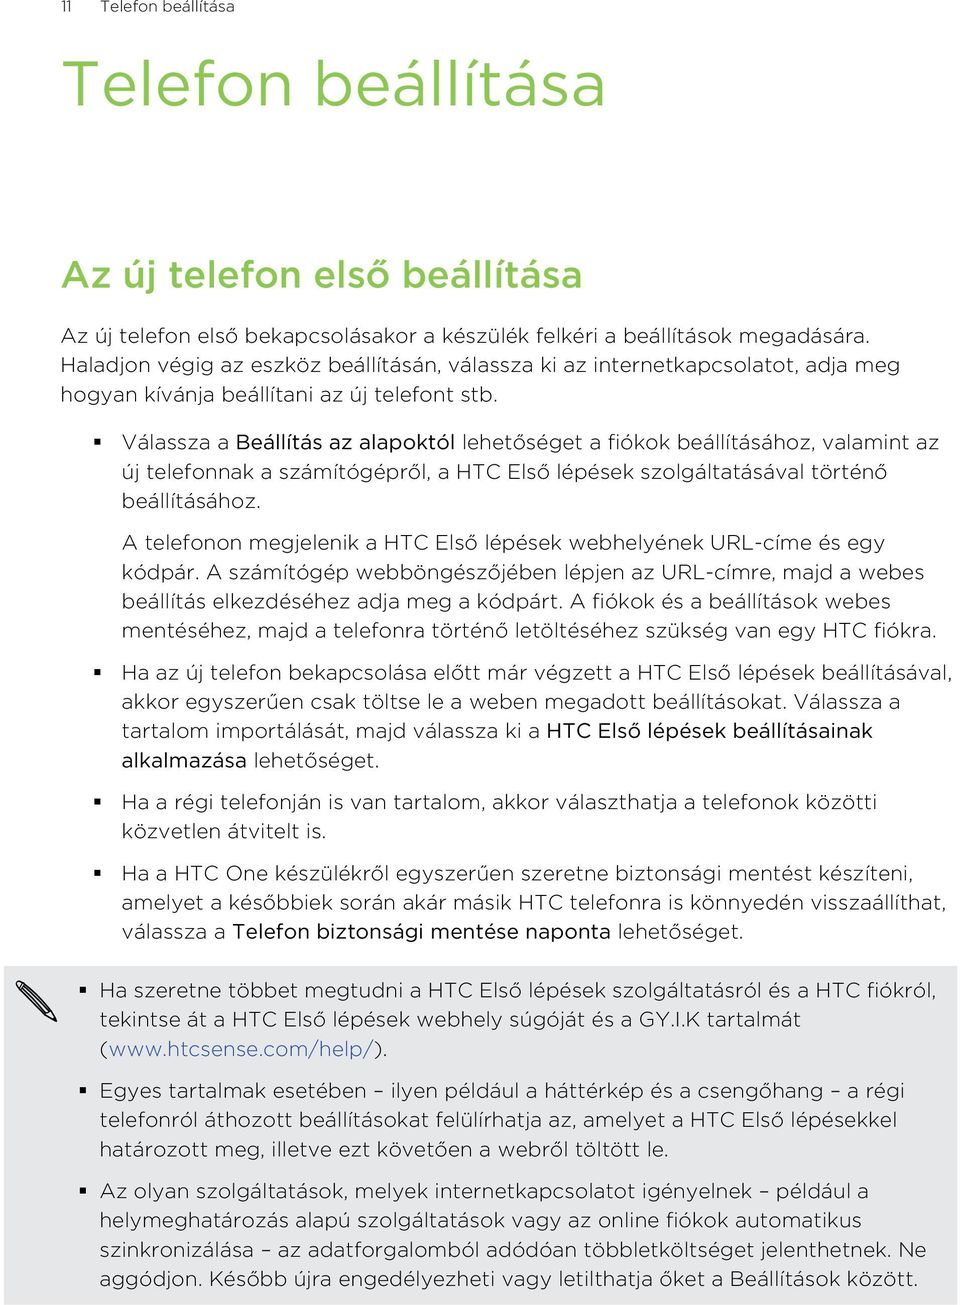 Válassza a Beállítás az alapoktól lehetőséget a fiókok beállításához, valamint az új telefonnak a számítógépről, a HTC Első lépések szolgáltatásával történő beállításához.